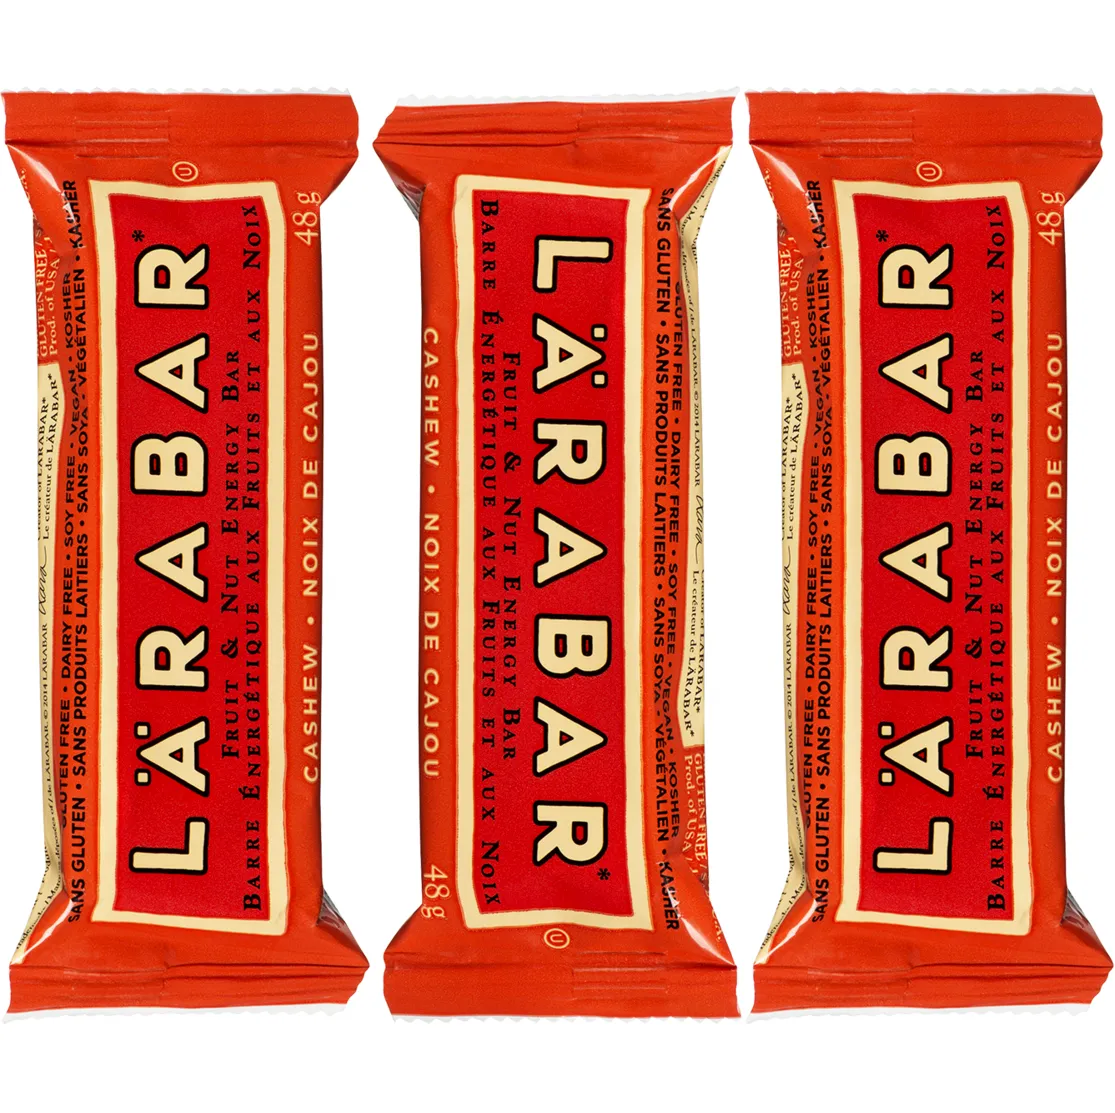 Free Larabar Minis